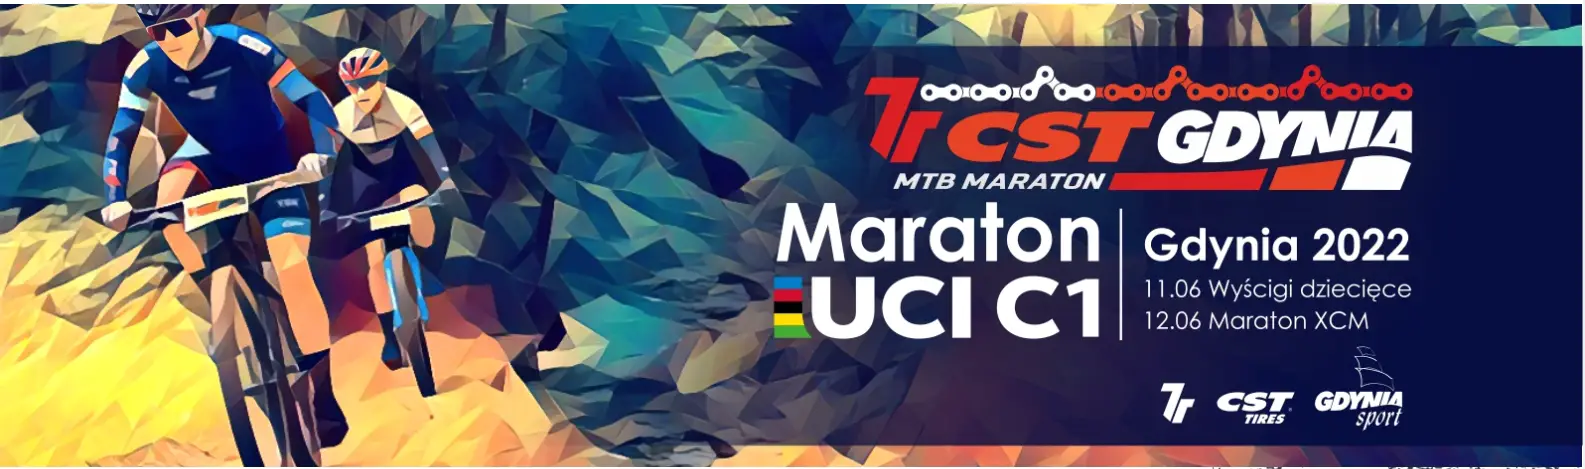 Siedemnasta edycja MTB Gdynia Maratonu